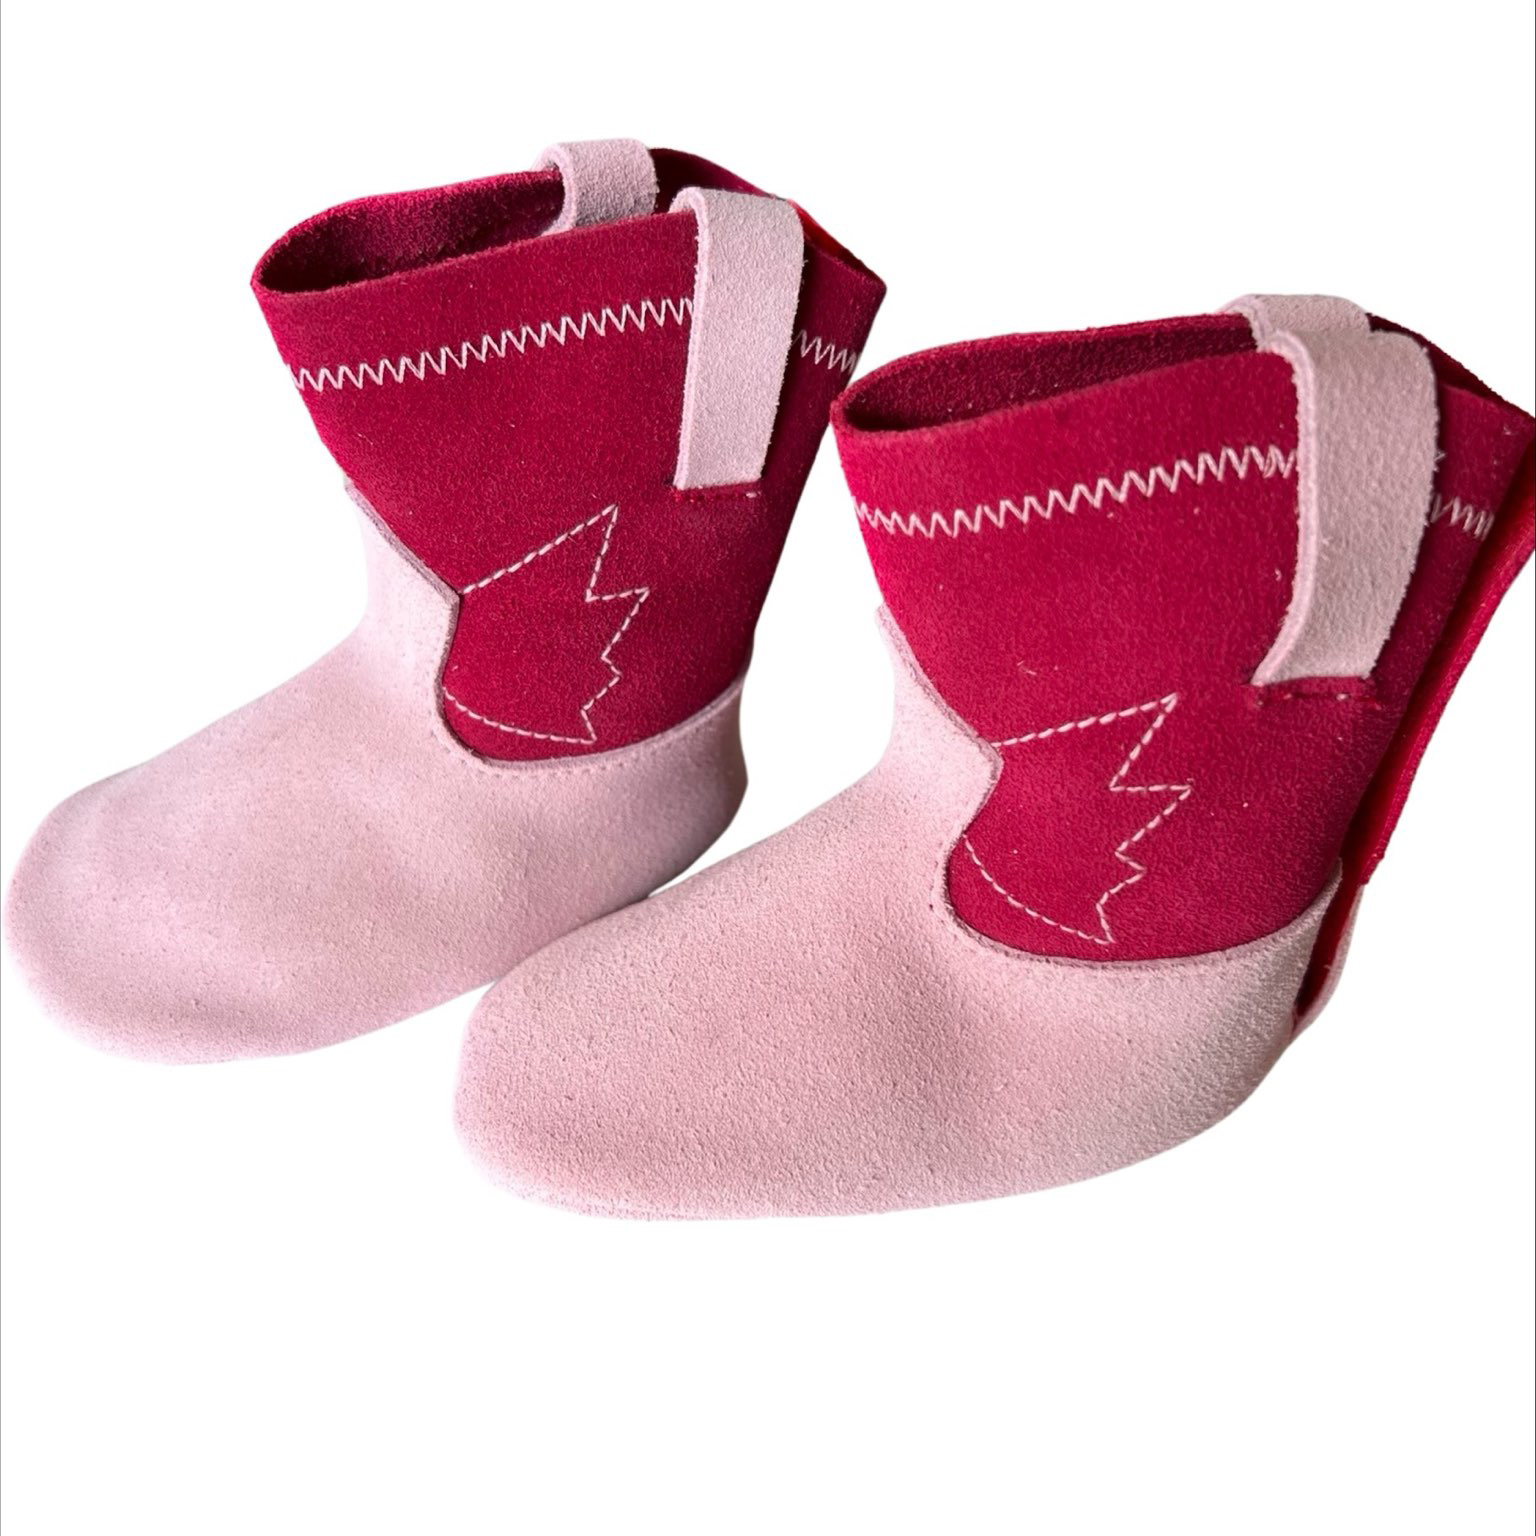 albetta pink boots2